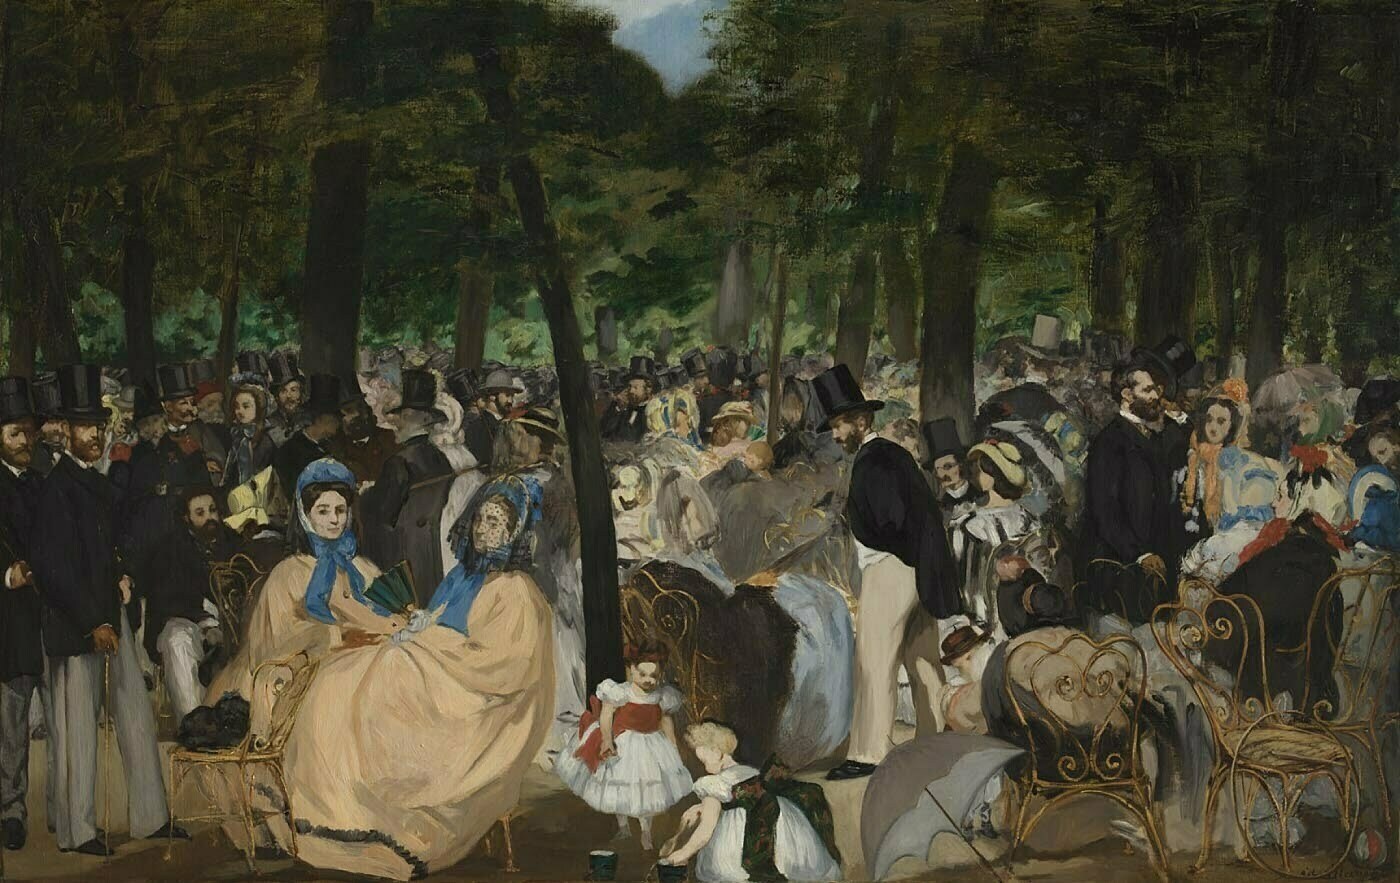 DOCUMENTAR – O după-amiază în Grădinile Tuileries, în prima pictură de anvergură a lui Manet despre viața contemporană pariziană